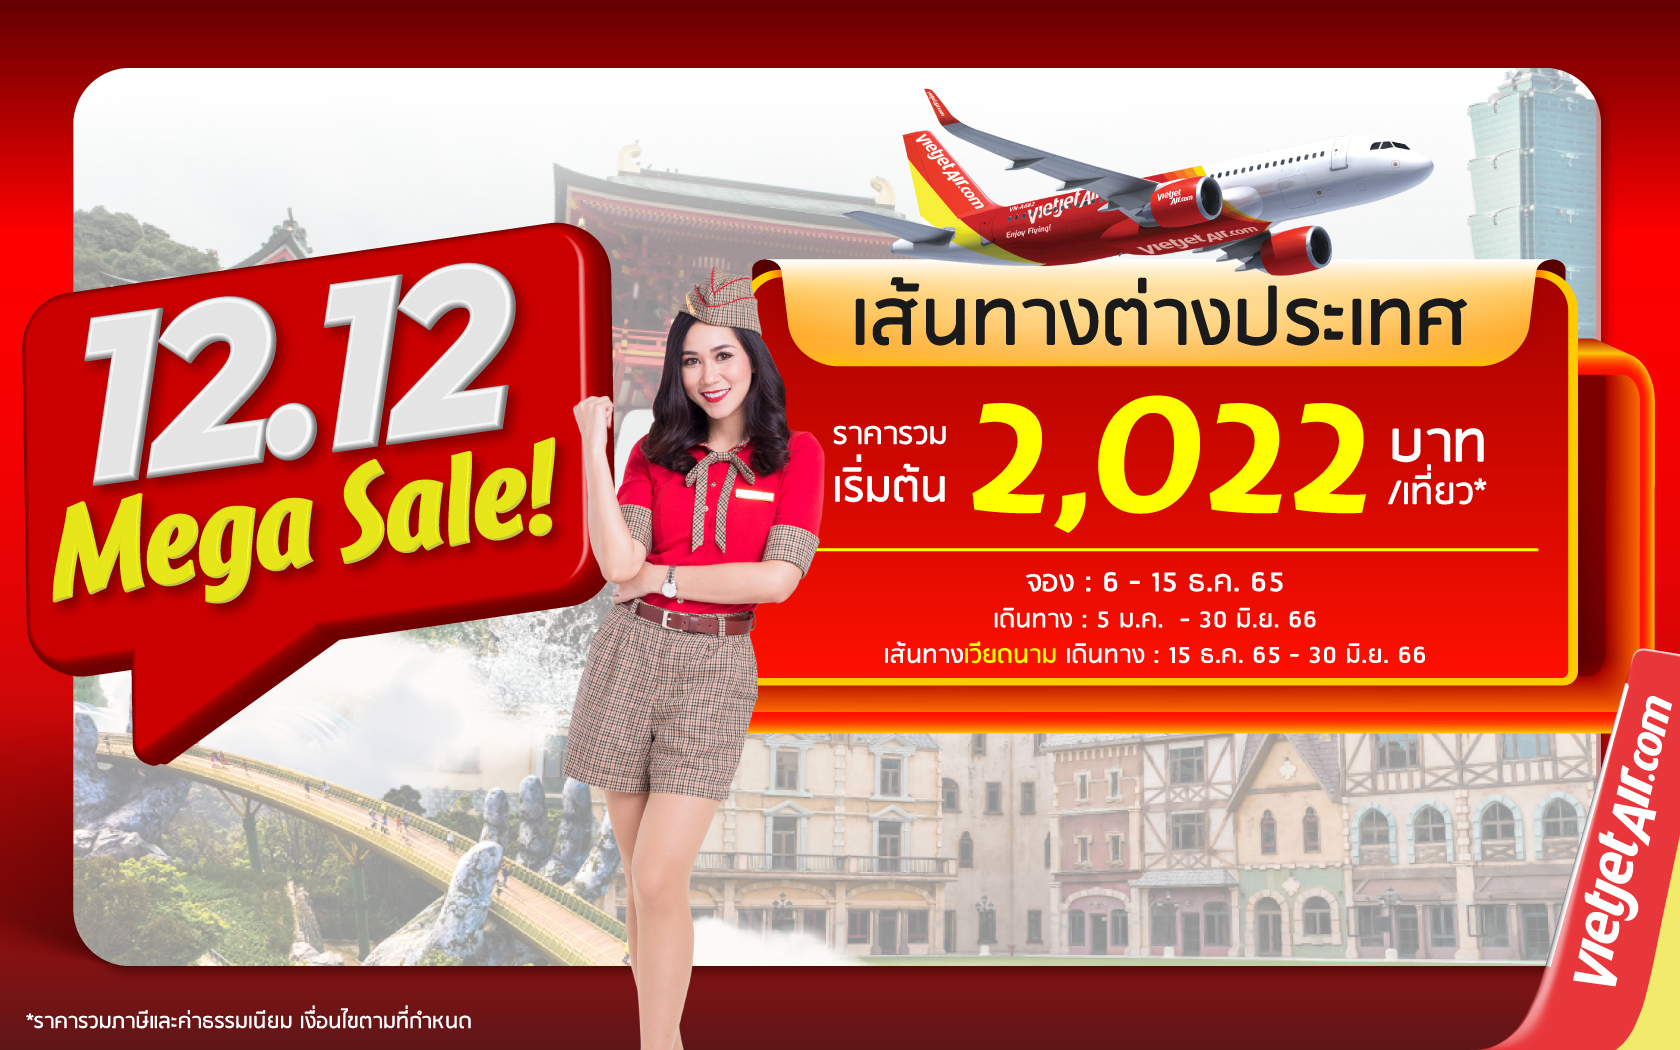 ’12.12 บินสนุก สุขส่งท้าย’ บินอินเตอร์ฯ กับไทยเวียตเจ็ท ตั๋วเริ่มต้นเพียง 2,022 บาท